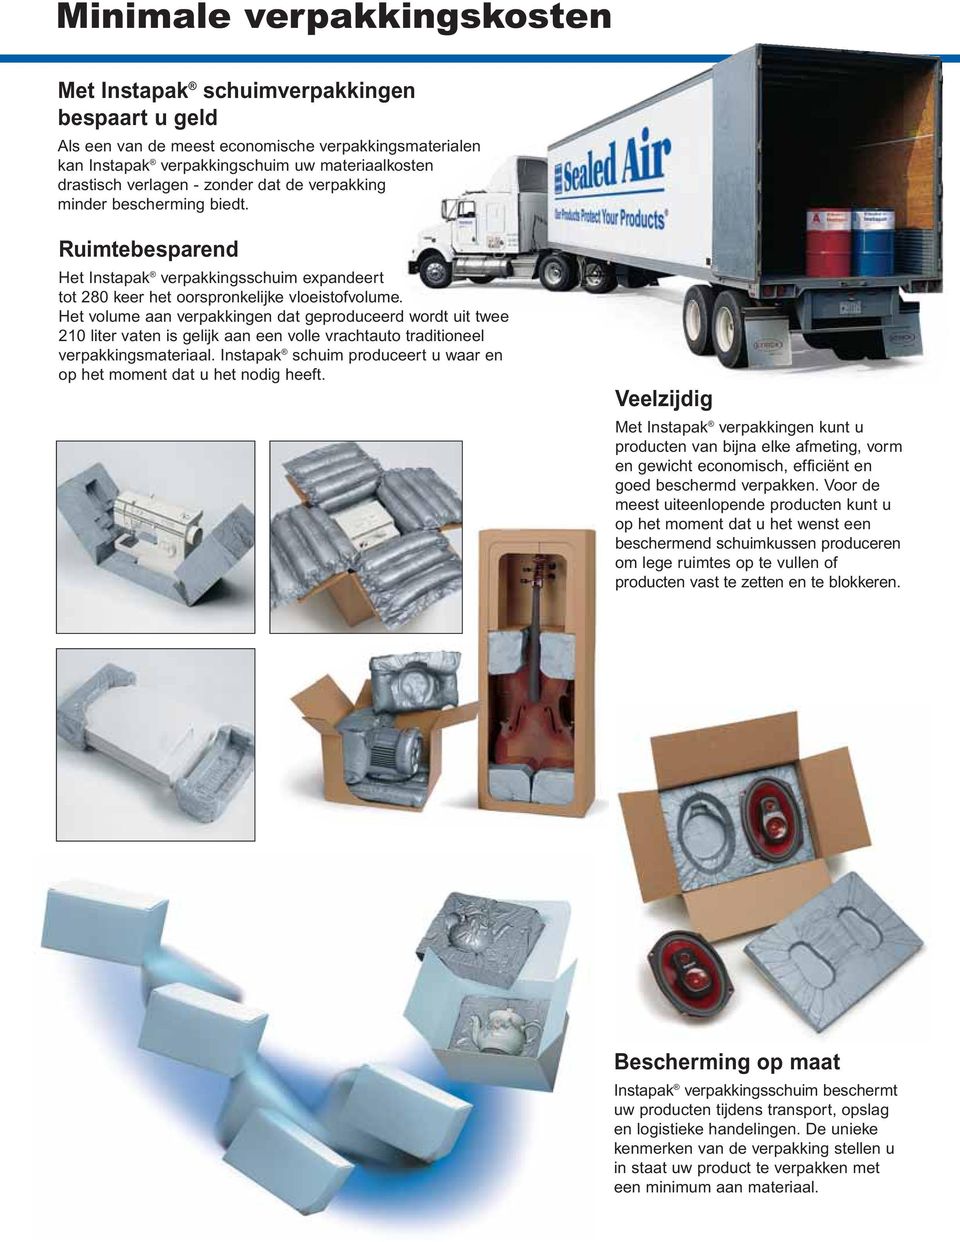 Het volume aan verpakkingen dat geproduceerd wordt uit twee 210 liter vaten is gelijk aan een volle vrachtauto traditioneel verpakkingsmateriaal.